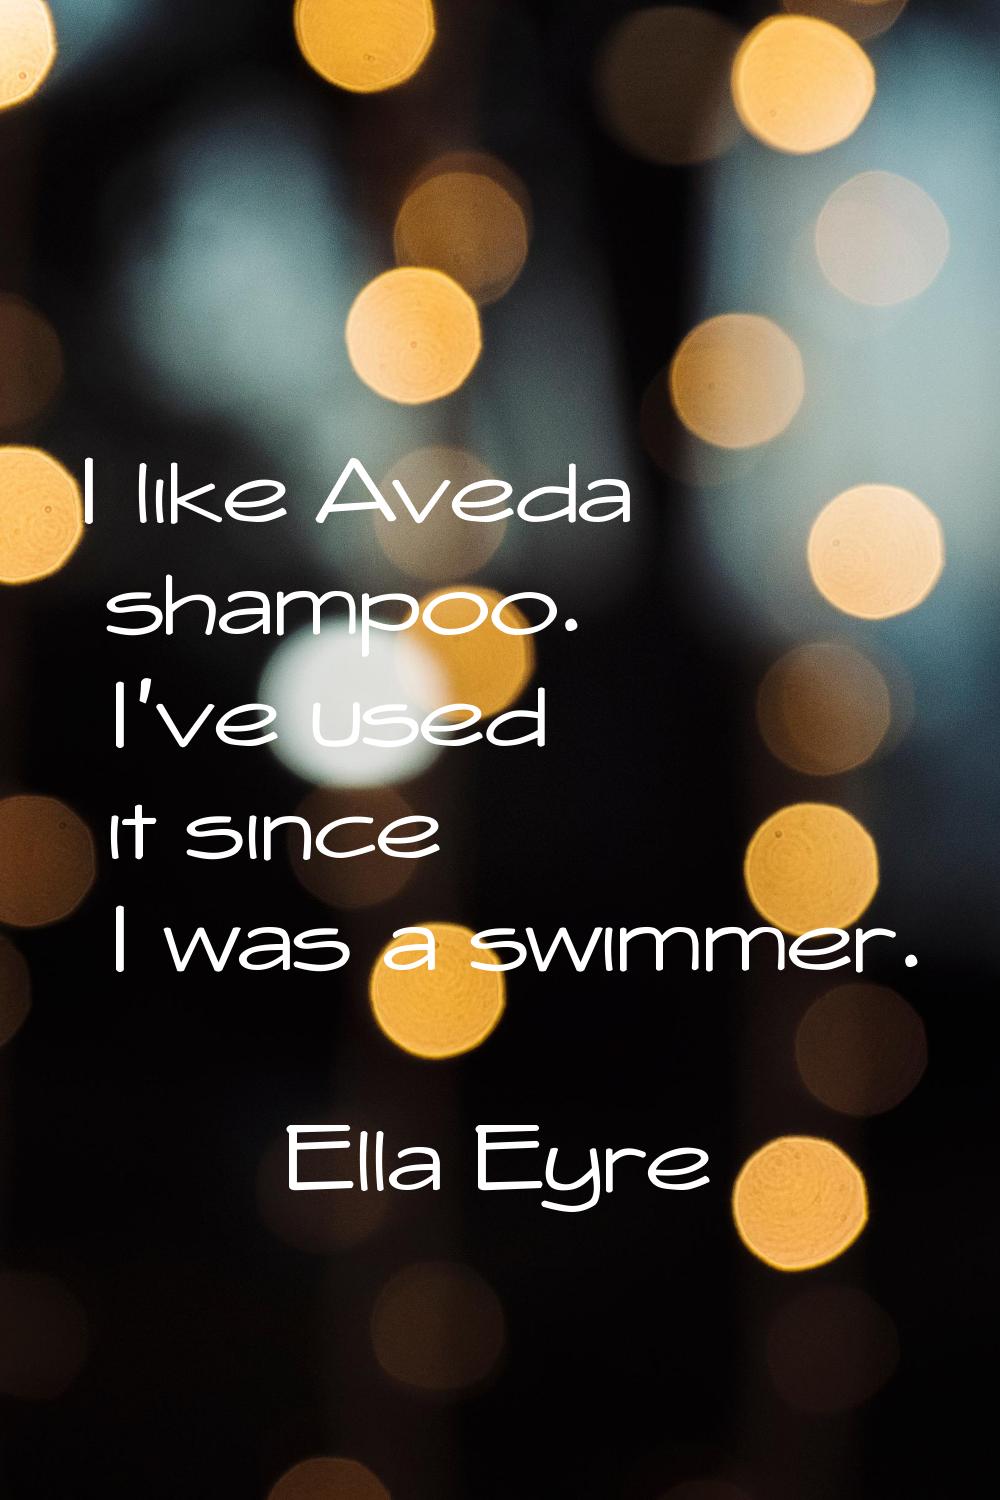 I like Aveda shampoo. I've used it since I was a swimmer.